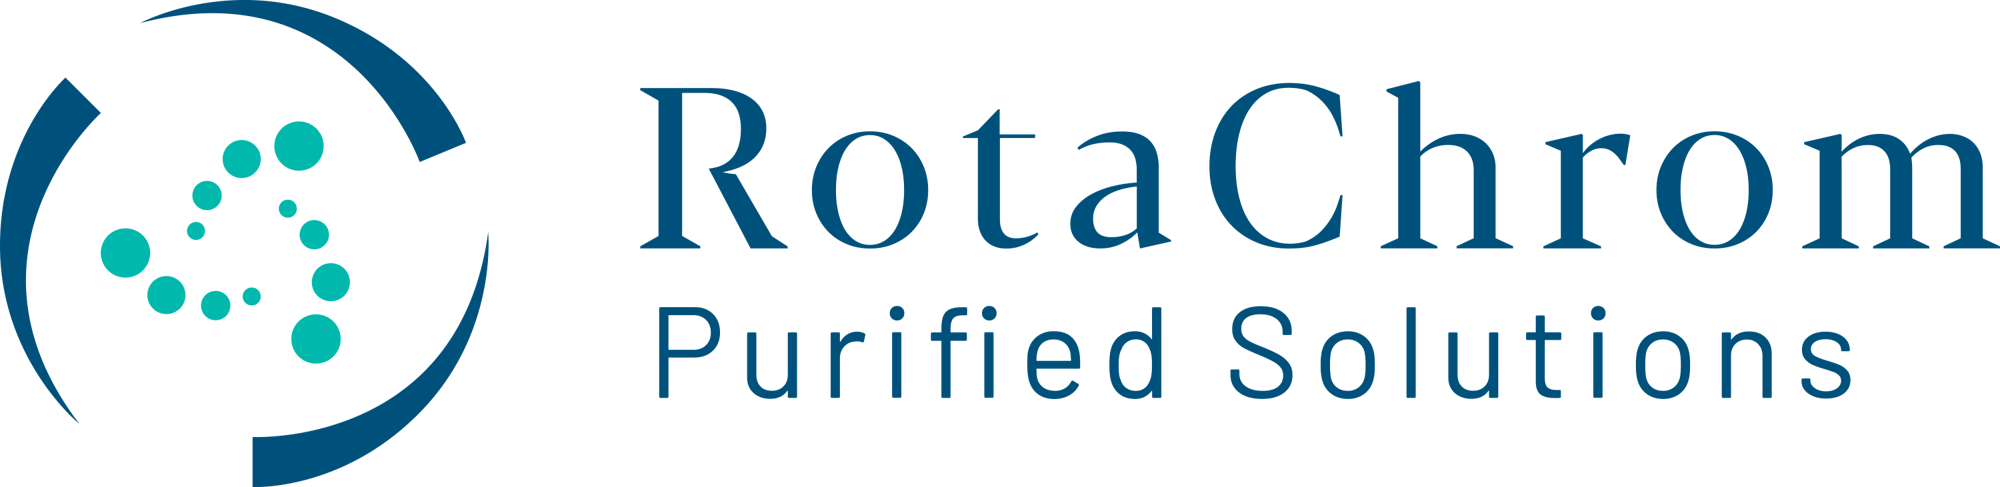 rotachrom_logo-1